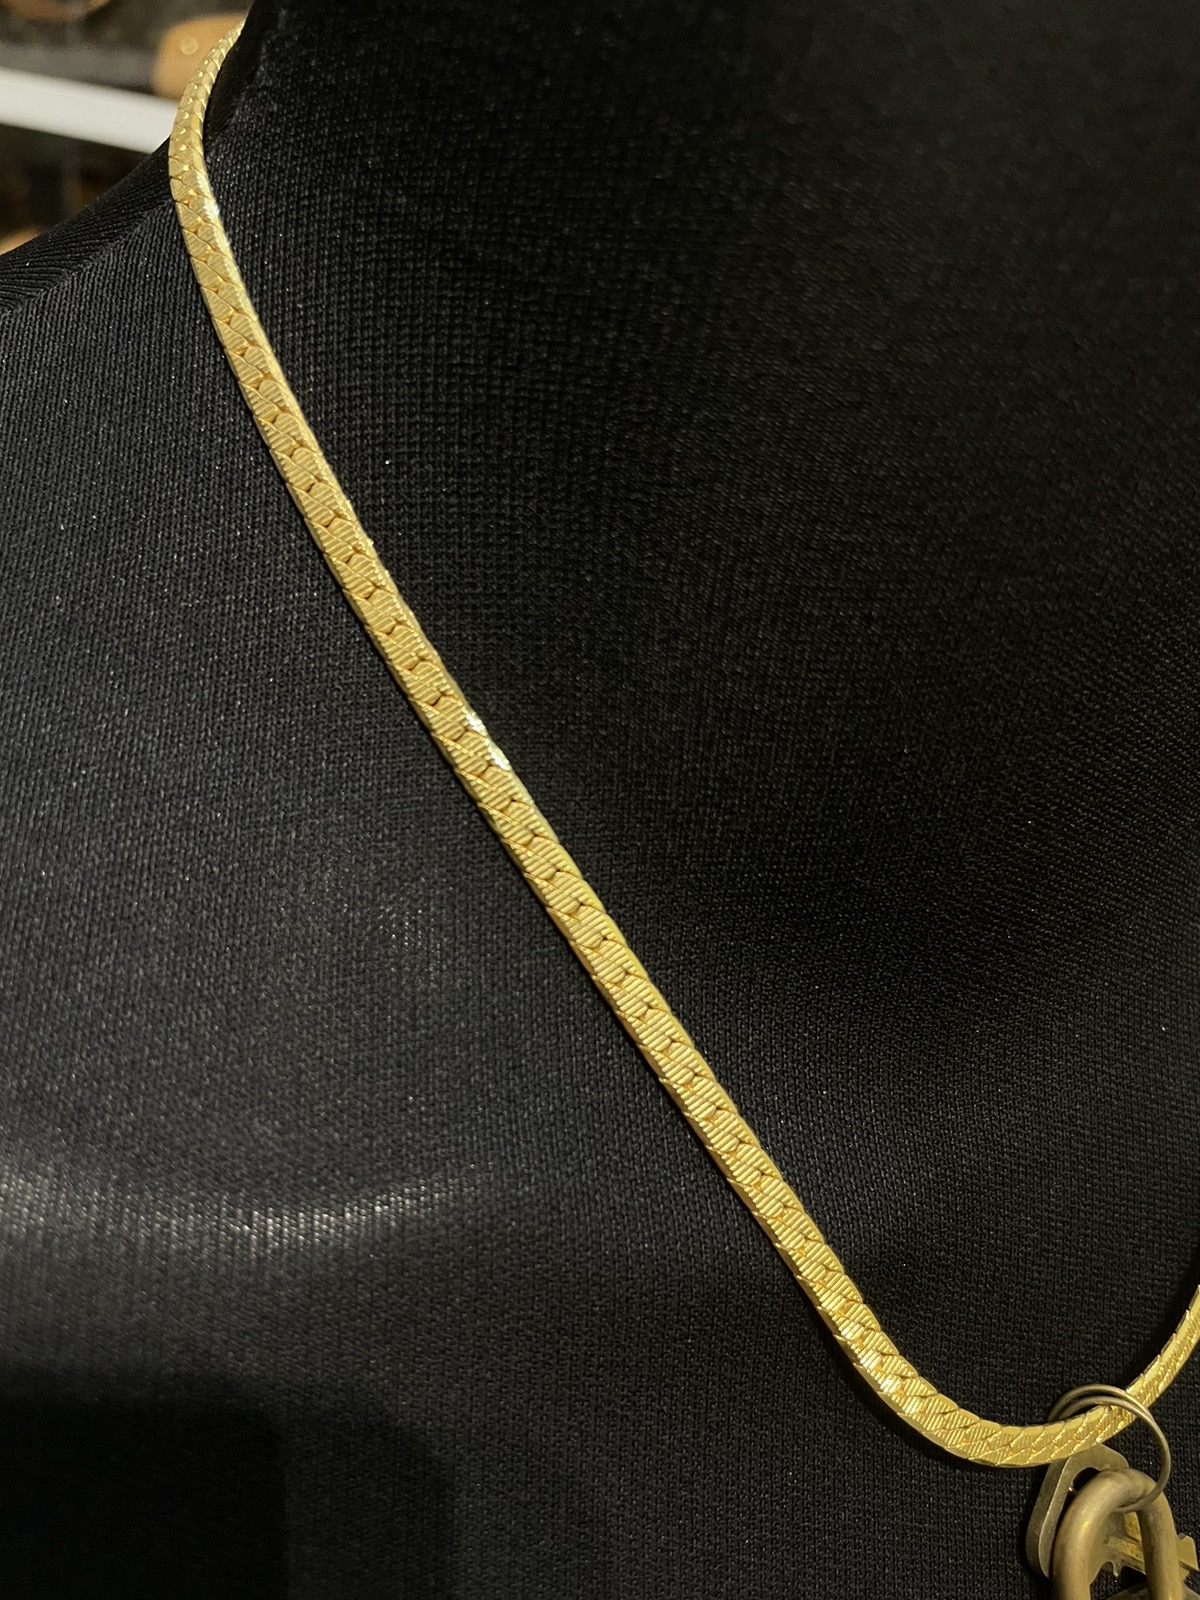 Louis Vuitton /key / Gold Necklace - 4